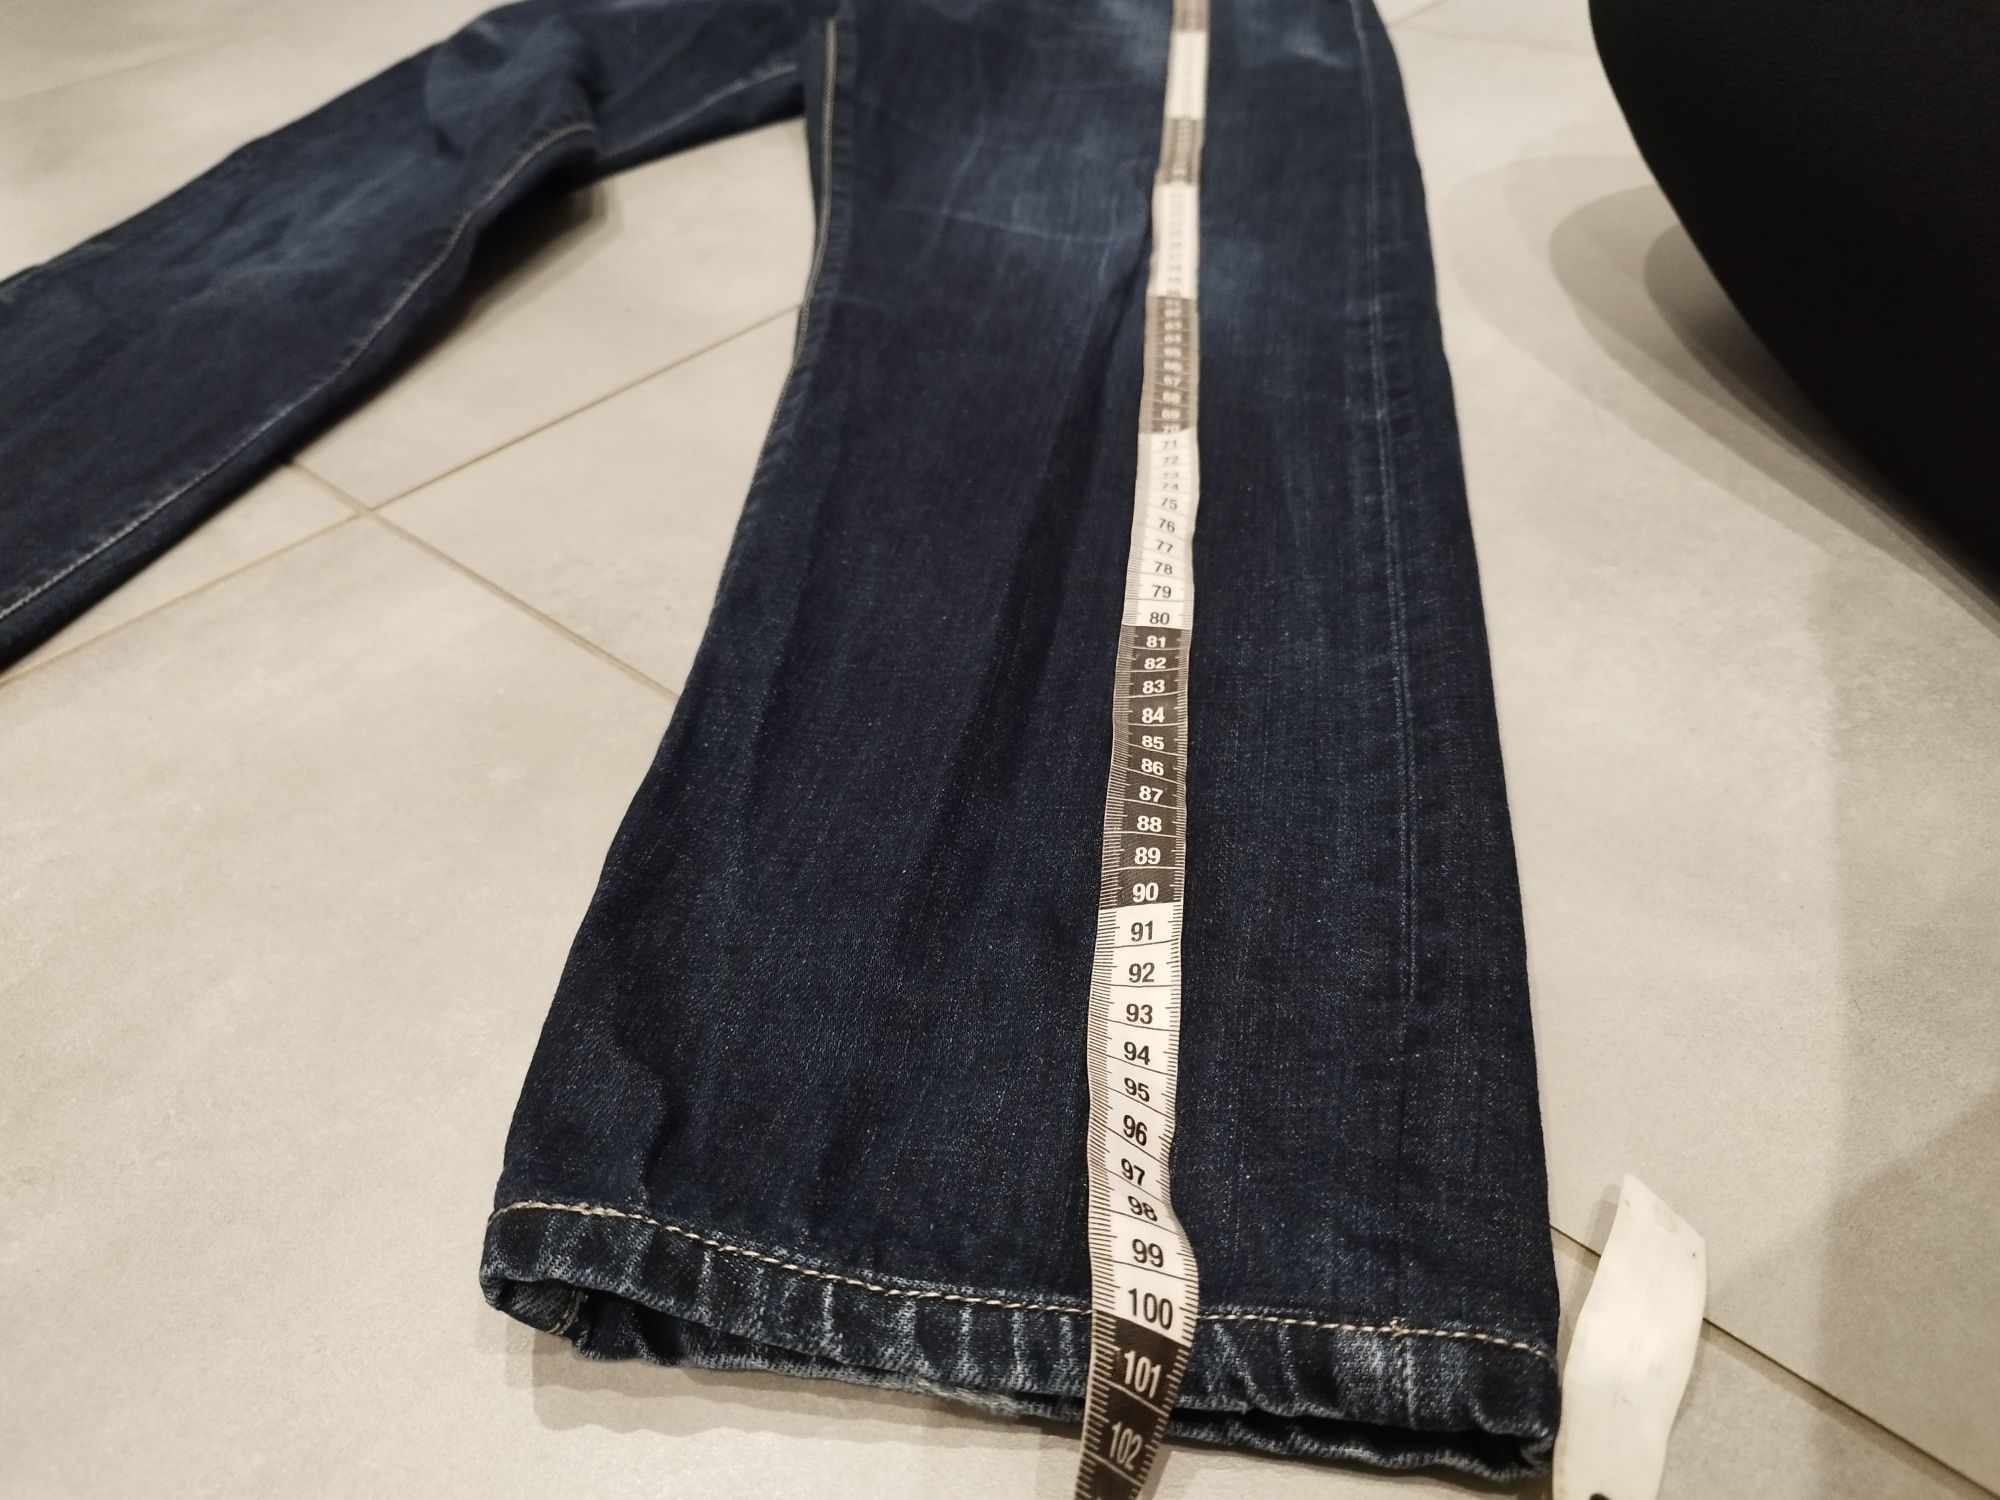 32x32 Carhartt klasyczne jeansy męskie